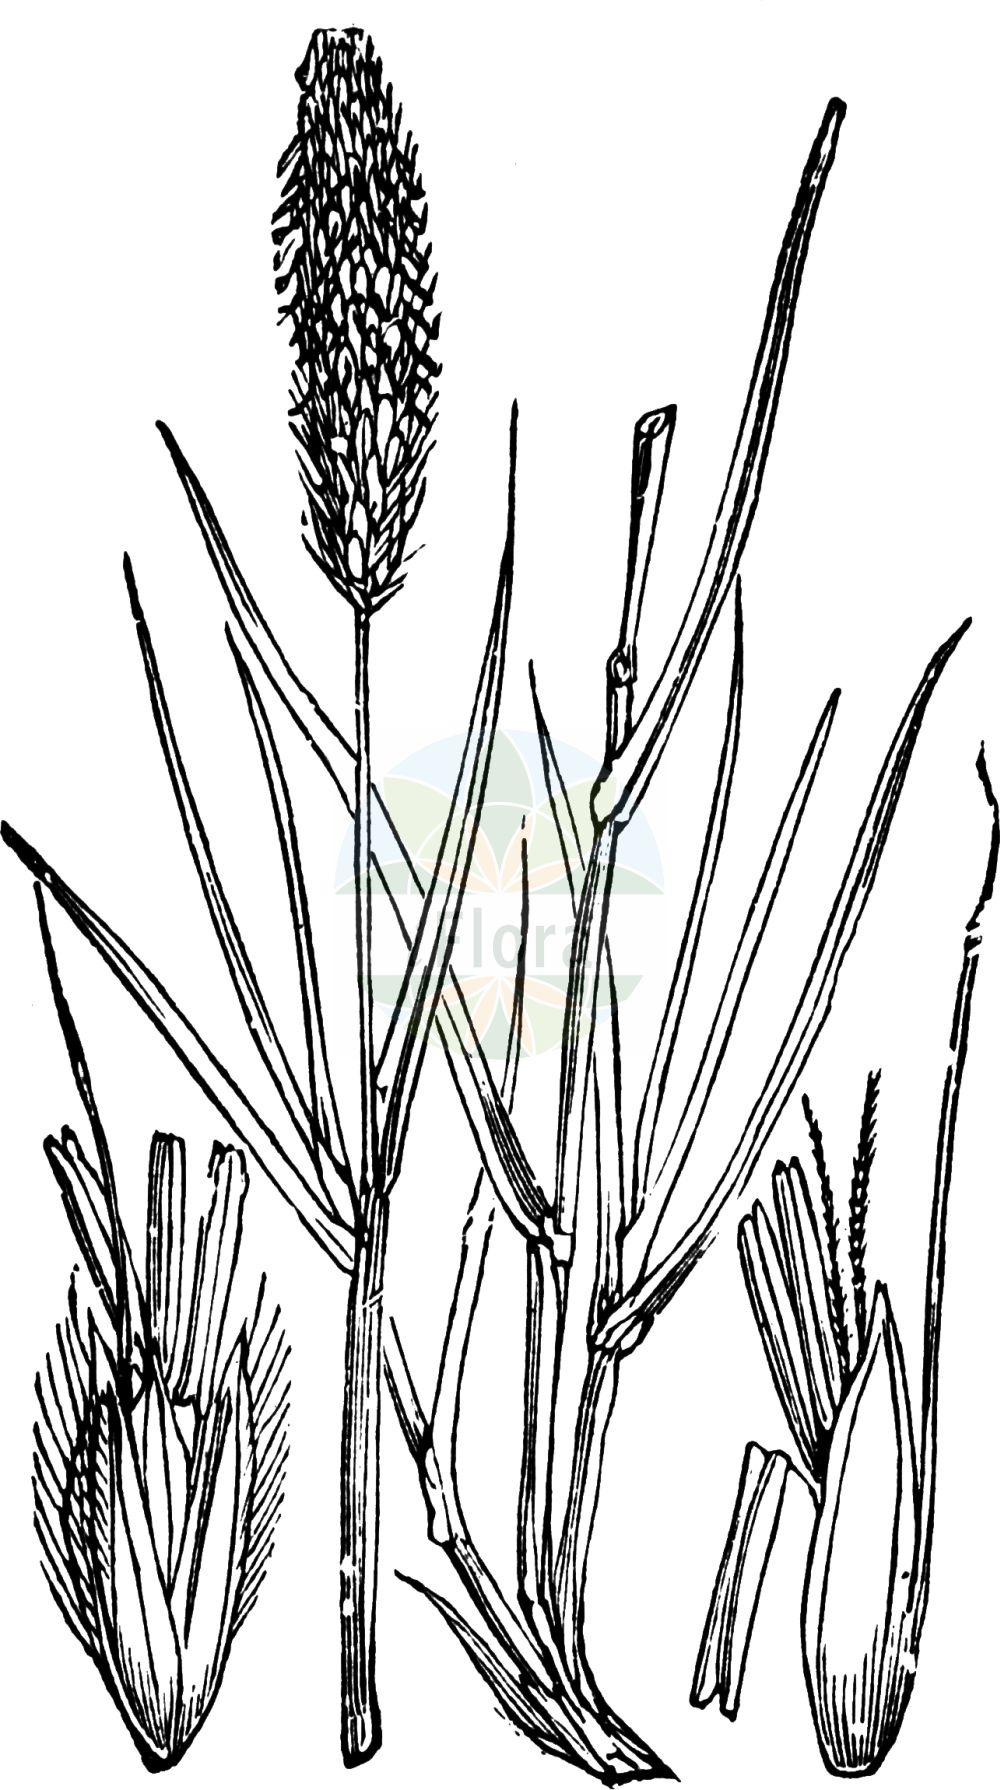 Historische Abbildung von Alopecurus pratensis (Wiesen-Fuchsschwanzgras - Meadow Foxtail). Das Bild zeigt Blatt, Bluete, Frucht und Same. ---- Historical Drawing of Alopecurus pratensis (Wiesen-Fuchsschwanzgras - Meadow Foxtail). The image is showing leaf, flower, fruit and seed.(Alopecurus pratensis,Wiesen-Fuchsschwanzgras,Meadow Foxtail,Alopecurus pratensis,Wiesen-Fuchsschwanzgras,Meadow Foxtail,Common Foxtail Grass,Rendle's Meadow Foxtail,Alopecurus,Fuchsschwanzgras,Foxtail,Poaceae,Süßgräser,Grass family,Blatt,Bluete,Frucht,Same,leaf,flower,fruit,seed,Fitch et al. (1880))